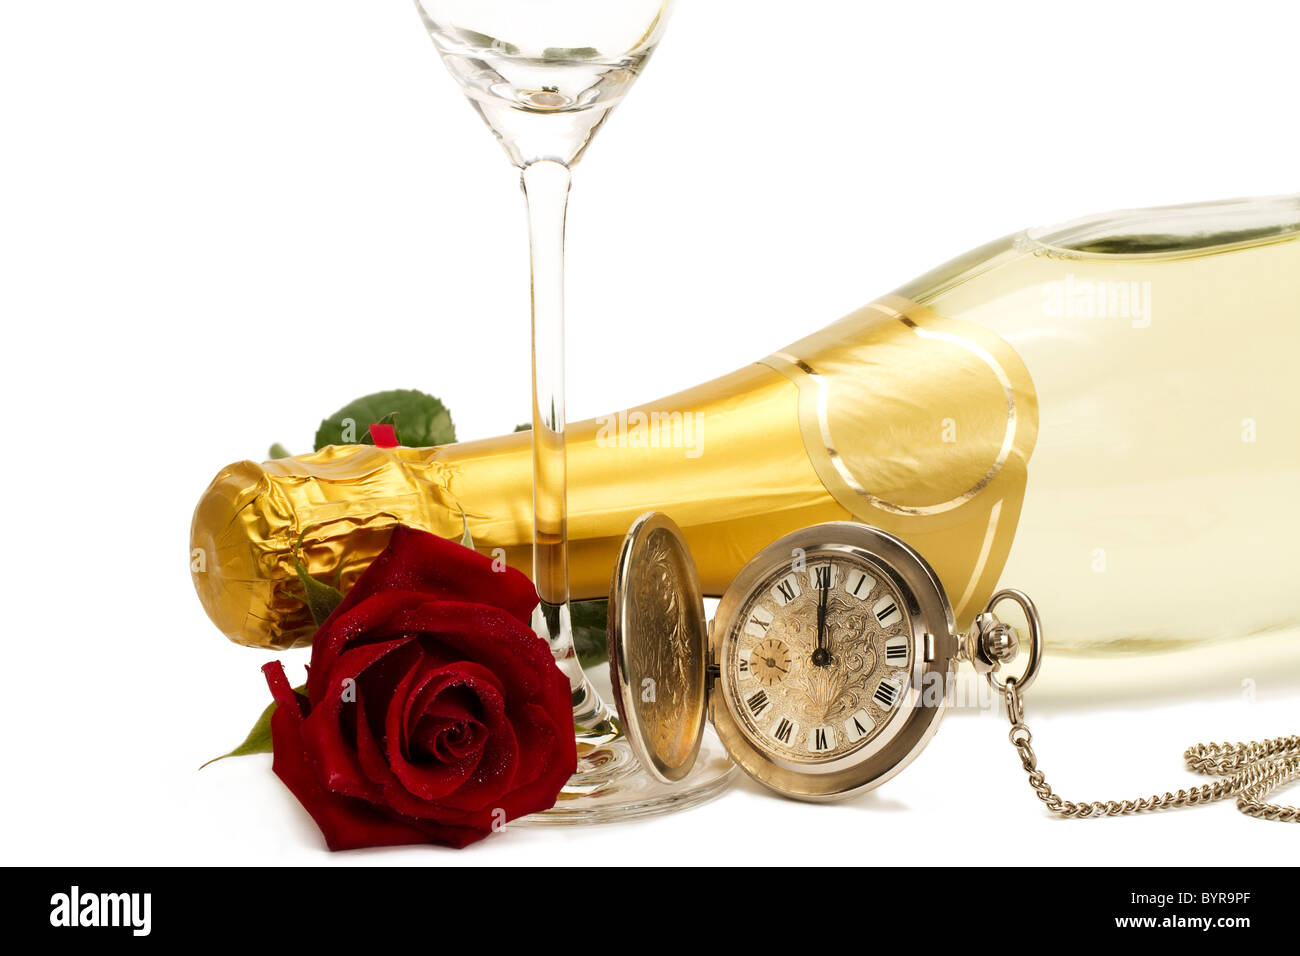 Rosa roja húmeda bajo una botella de champán con un viejo reloj de bolsillo y una copa de champán vacía sobre fondo blanco. Foto de stock